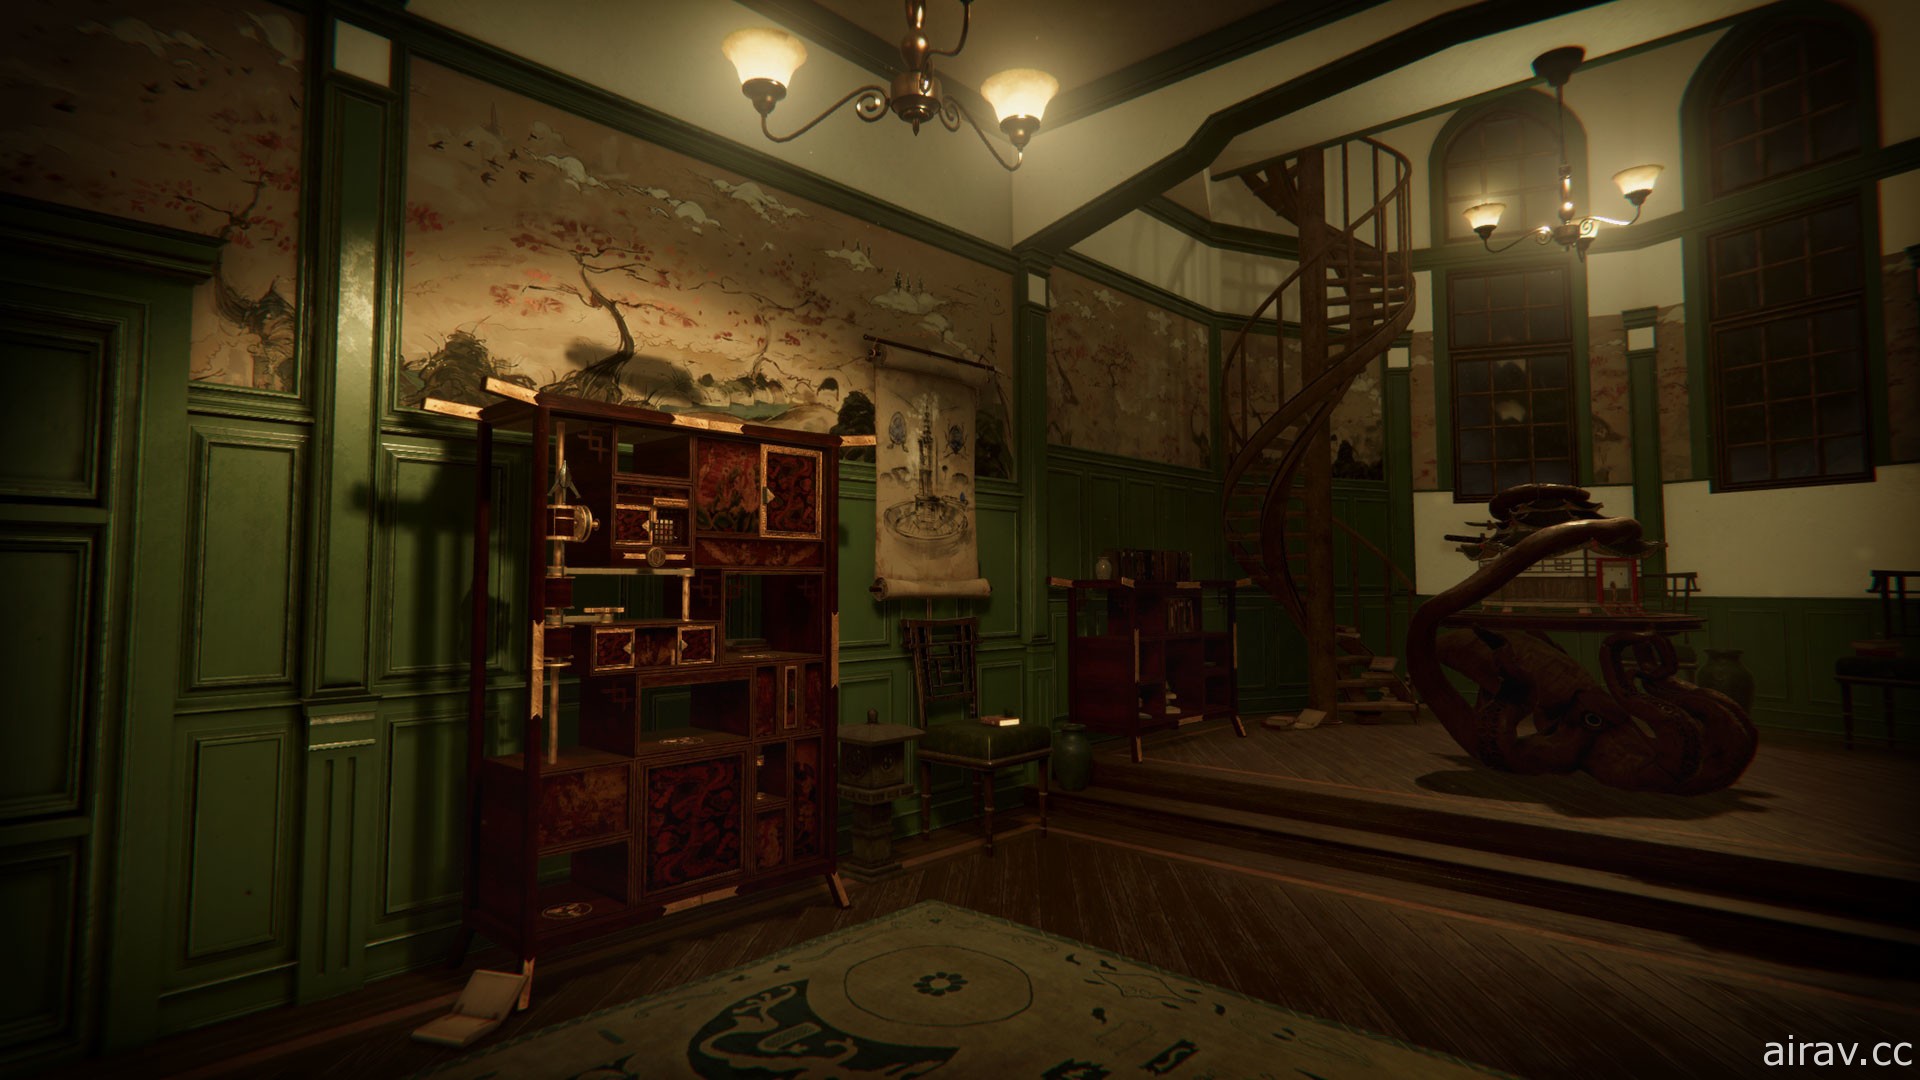 密室解謎遊戲《The Room 4: Old Sins》PC 版 2 月 11 日登陸 Steam